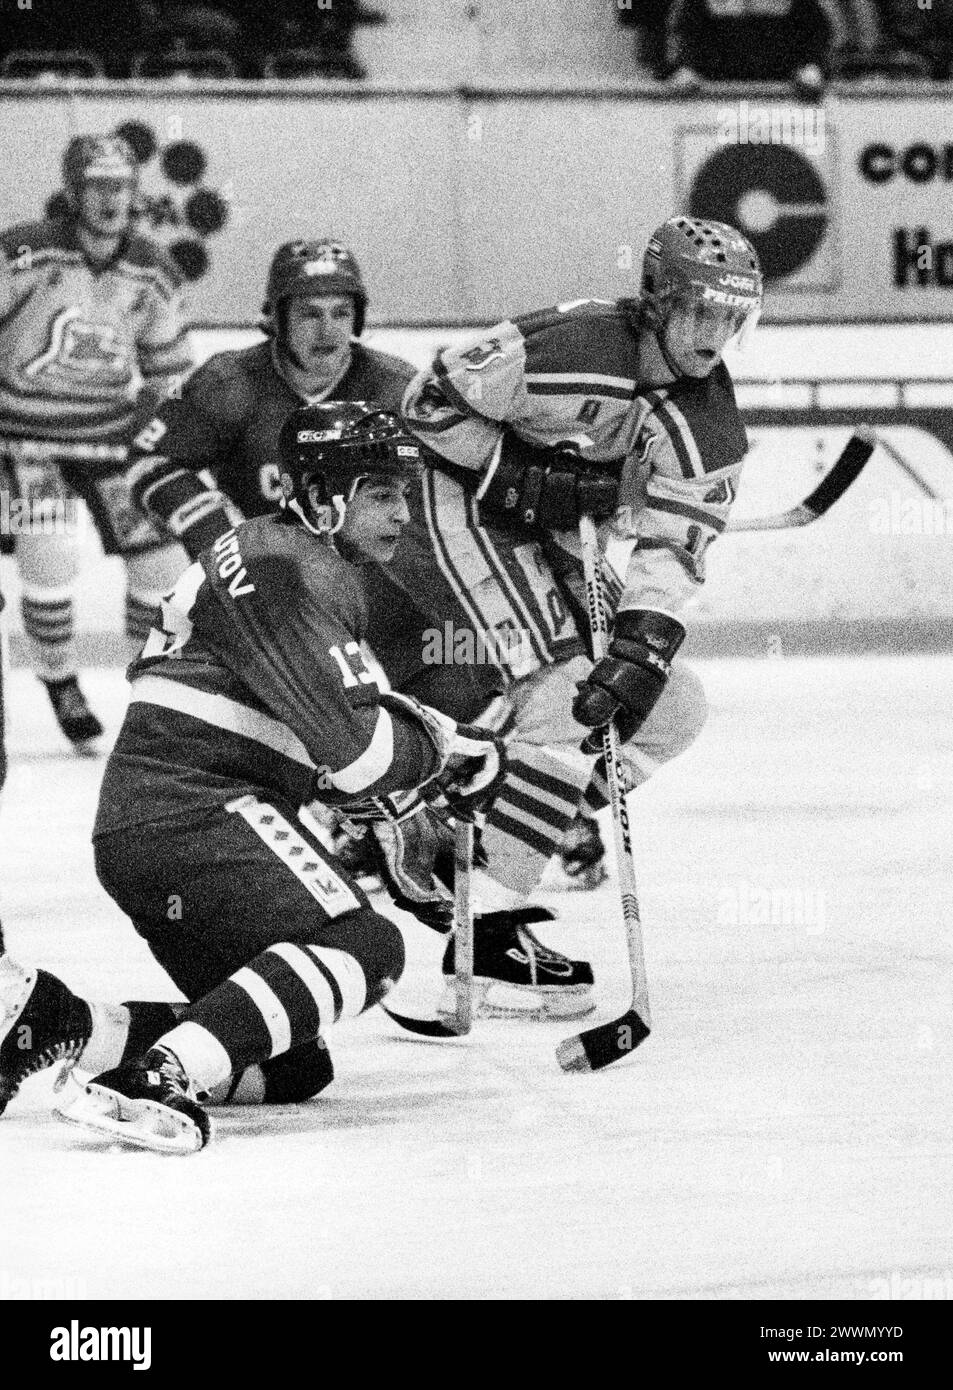 MICHAEL HJÄLM hockey sur glace Suède dans un match national contre les soviétiques à Stockholm Andrei Chumutov à genoux Banque D'Images